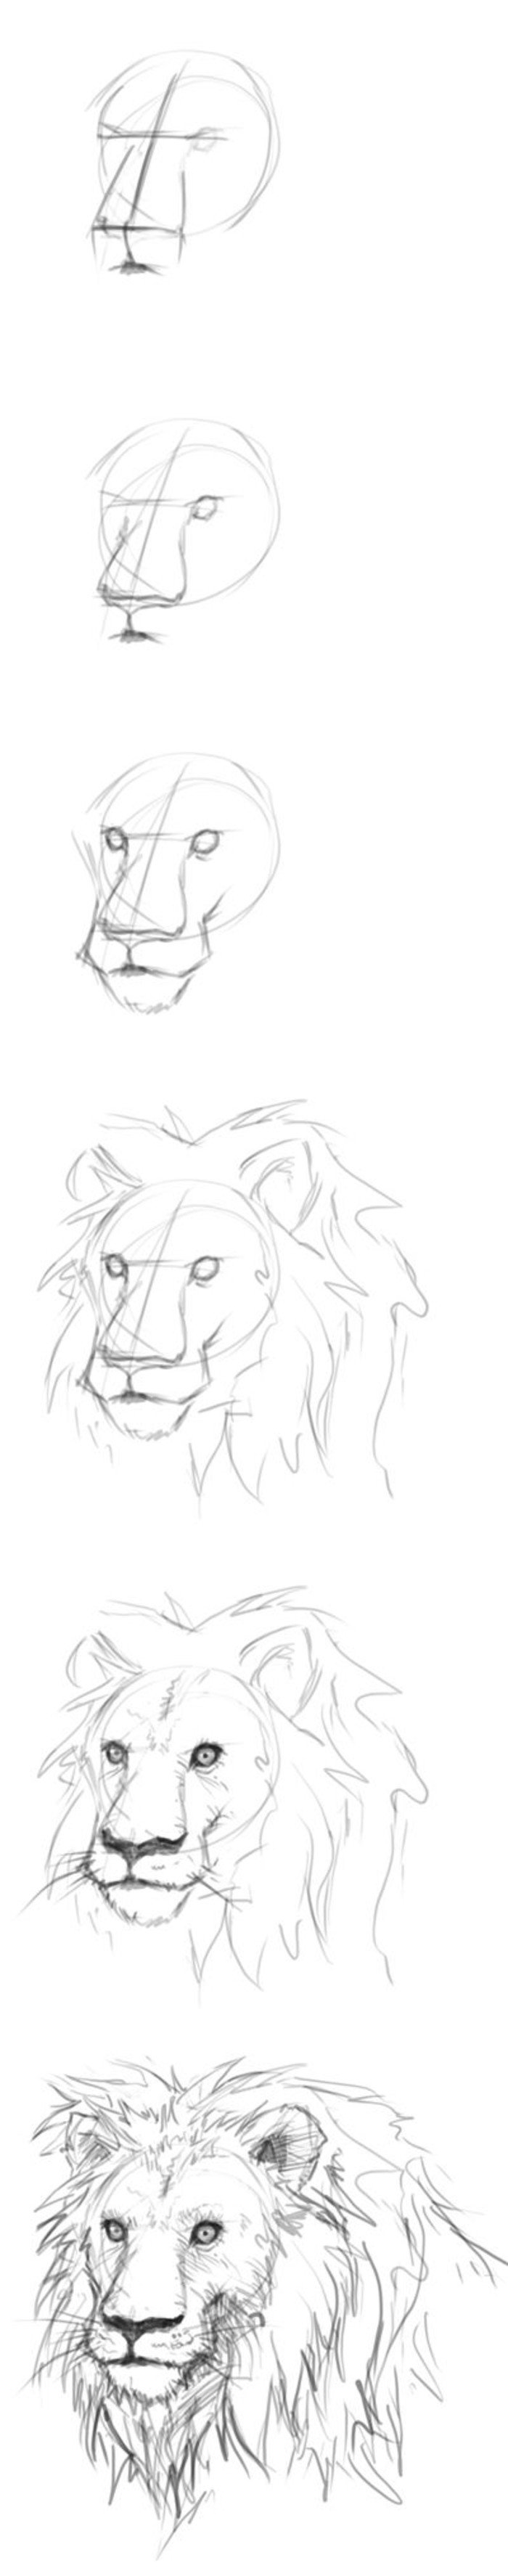 Поэтапное рисование головы Льва